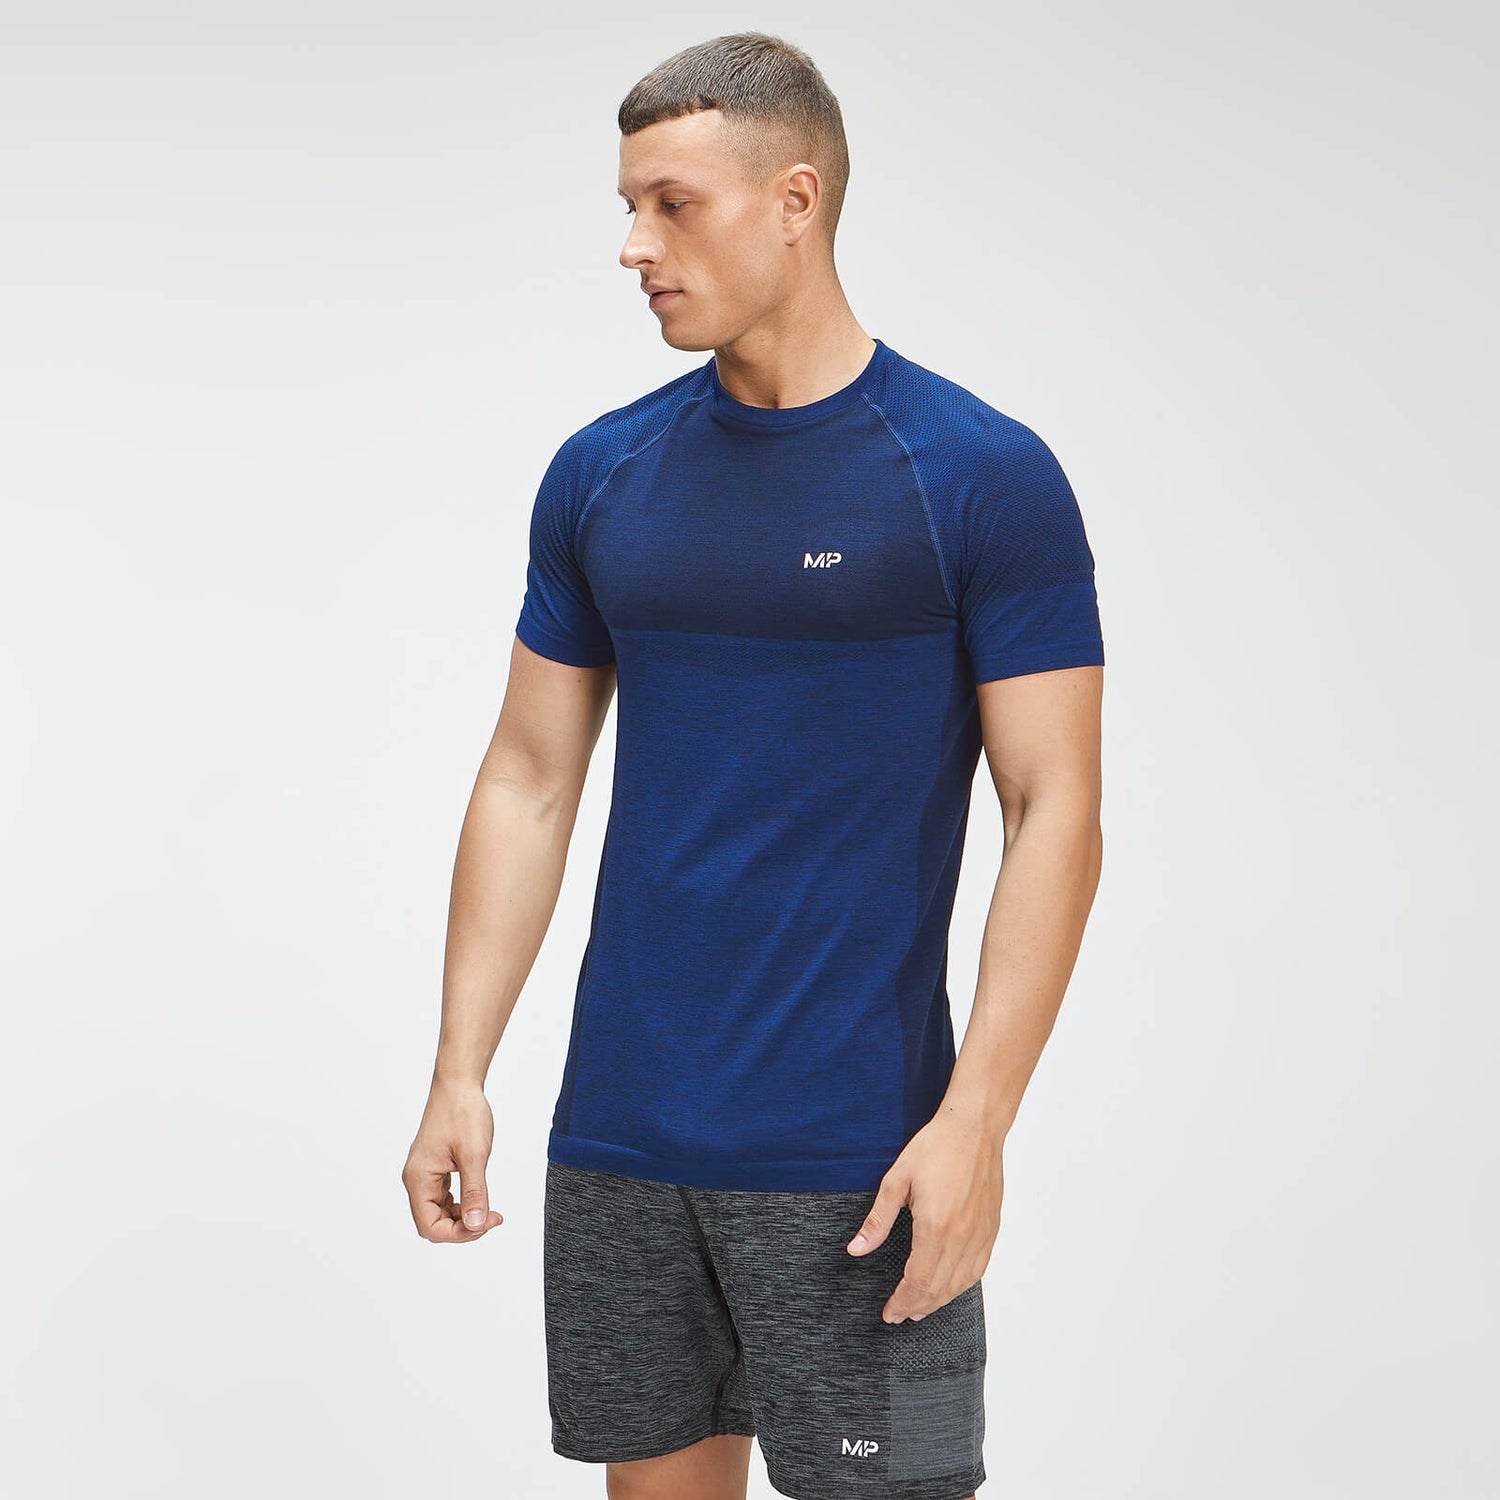 Vyriški marškinėliai trumpomis rankovėmis "Essential Seamless" - Intense Blue Marl - XS